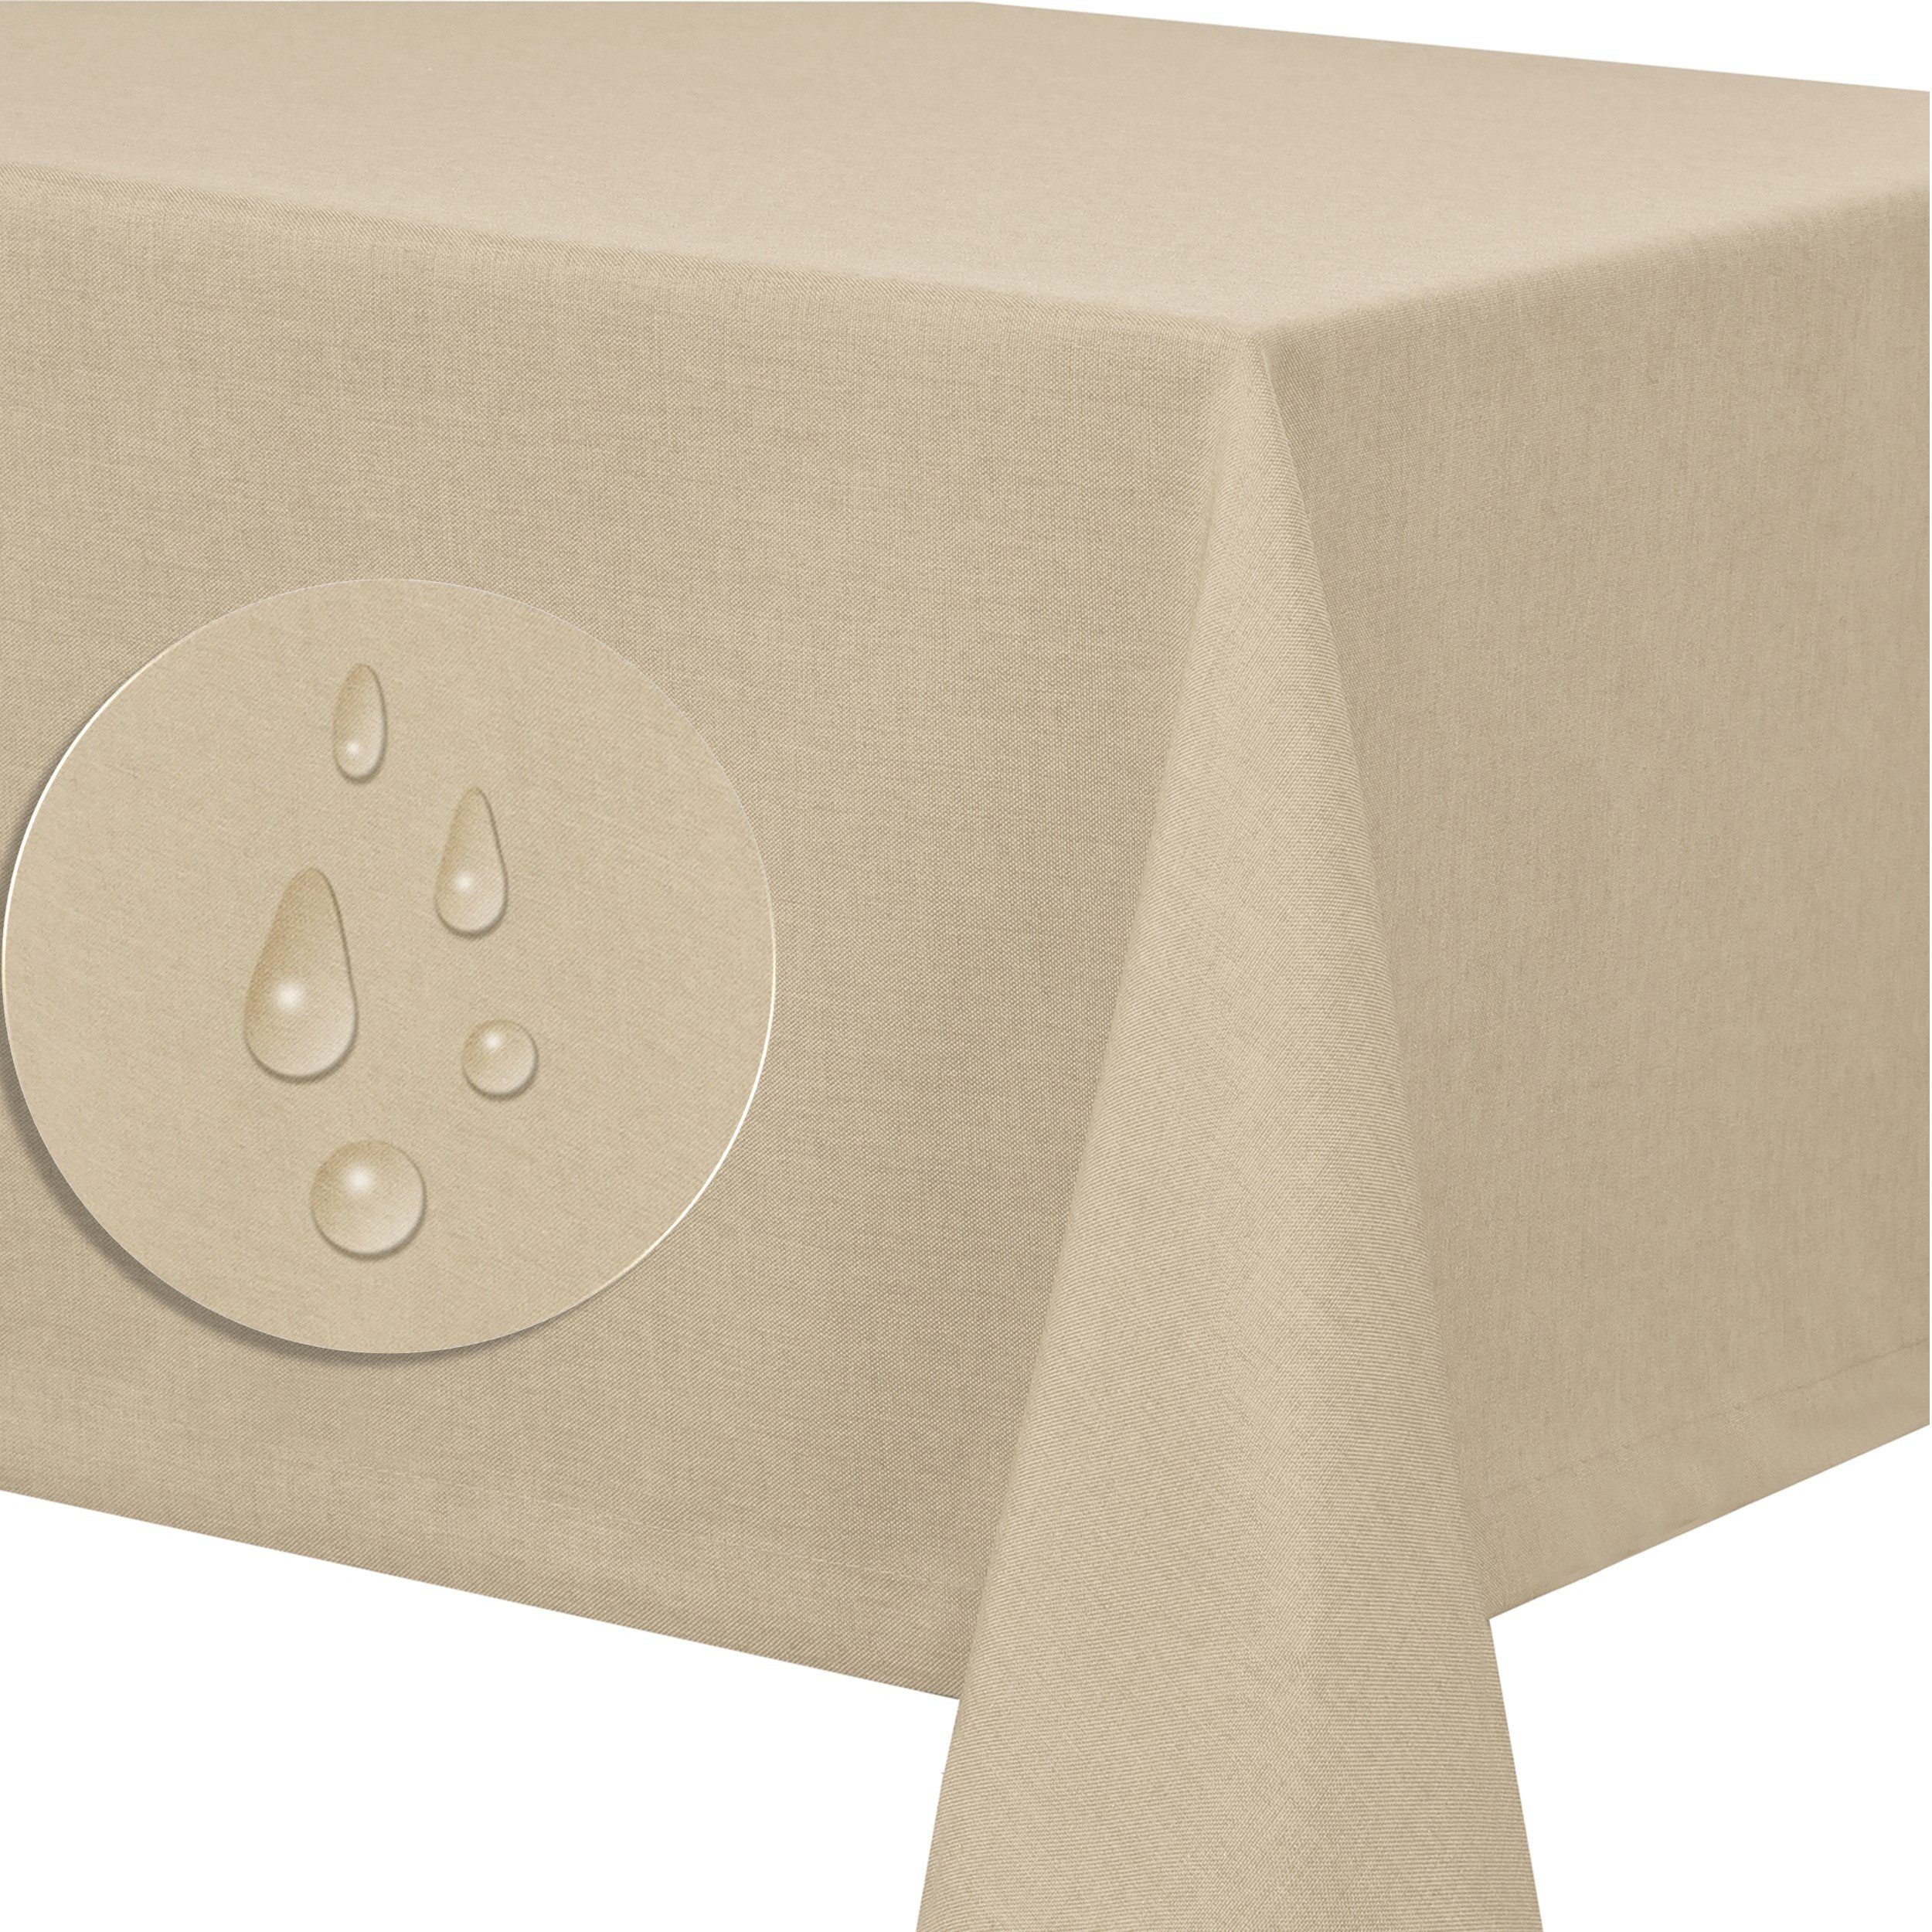 Optik Tischdecke tafeltuch pflegeleicht abwaschbar schmutzabweisend Tischdecke Tischtuch Leinenstruktur Lotuseffekt Creme Leinen Fiora